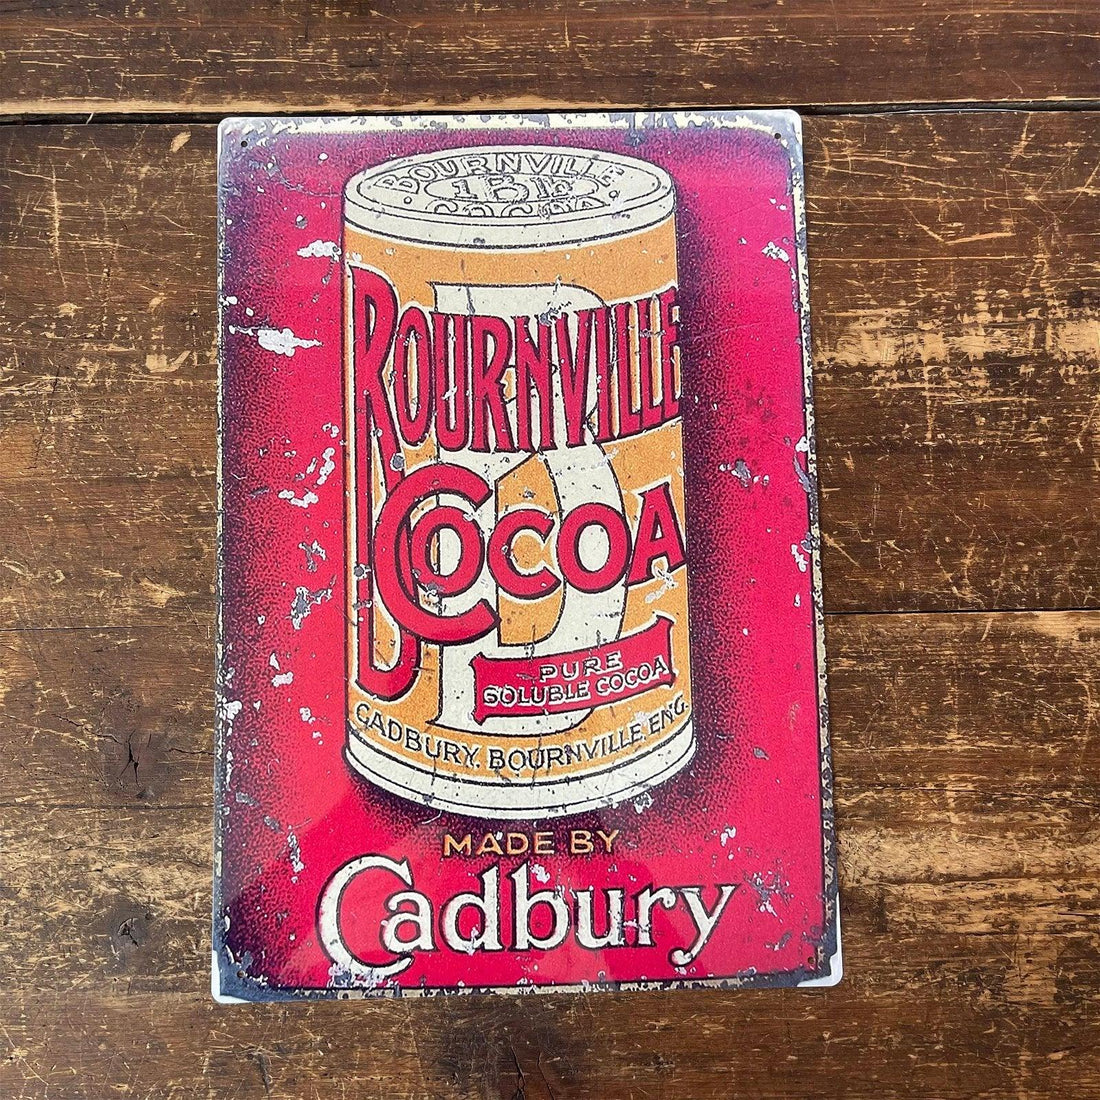 Vintage Metal Sign - Retro Advertising Cadbury Bournville Cocoa - £27.99 - Retro Advertising 